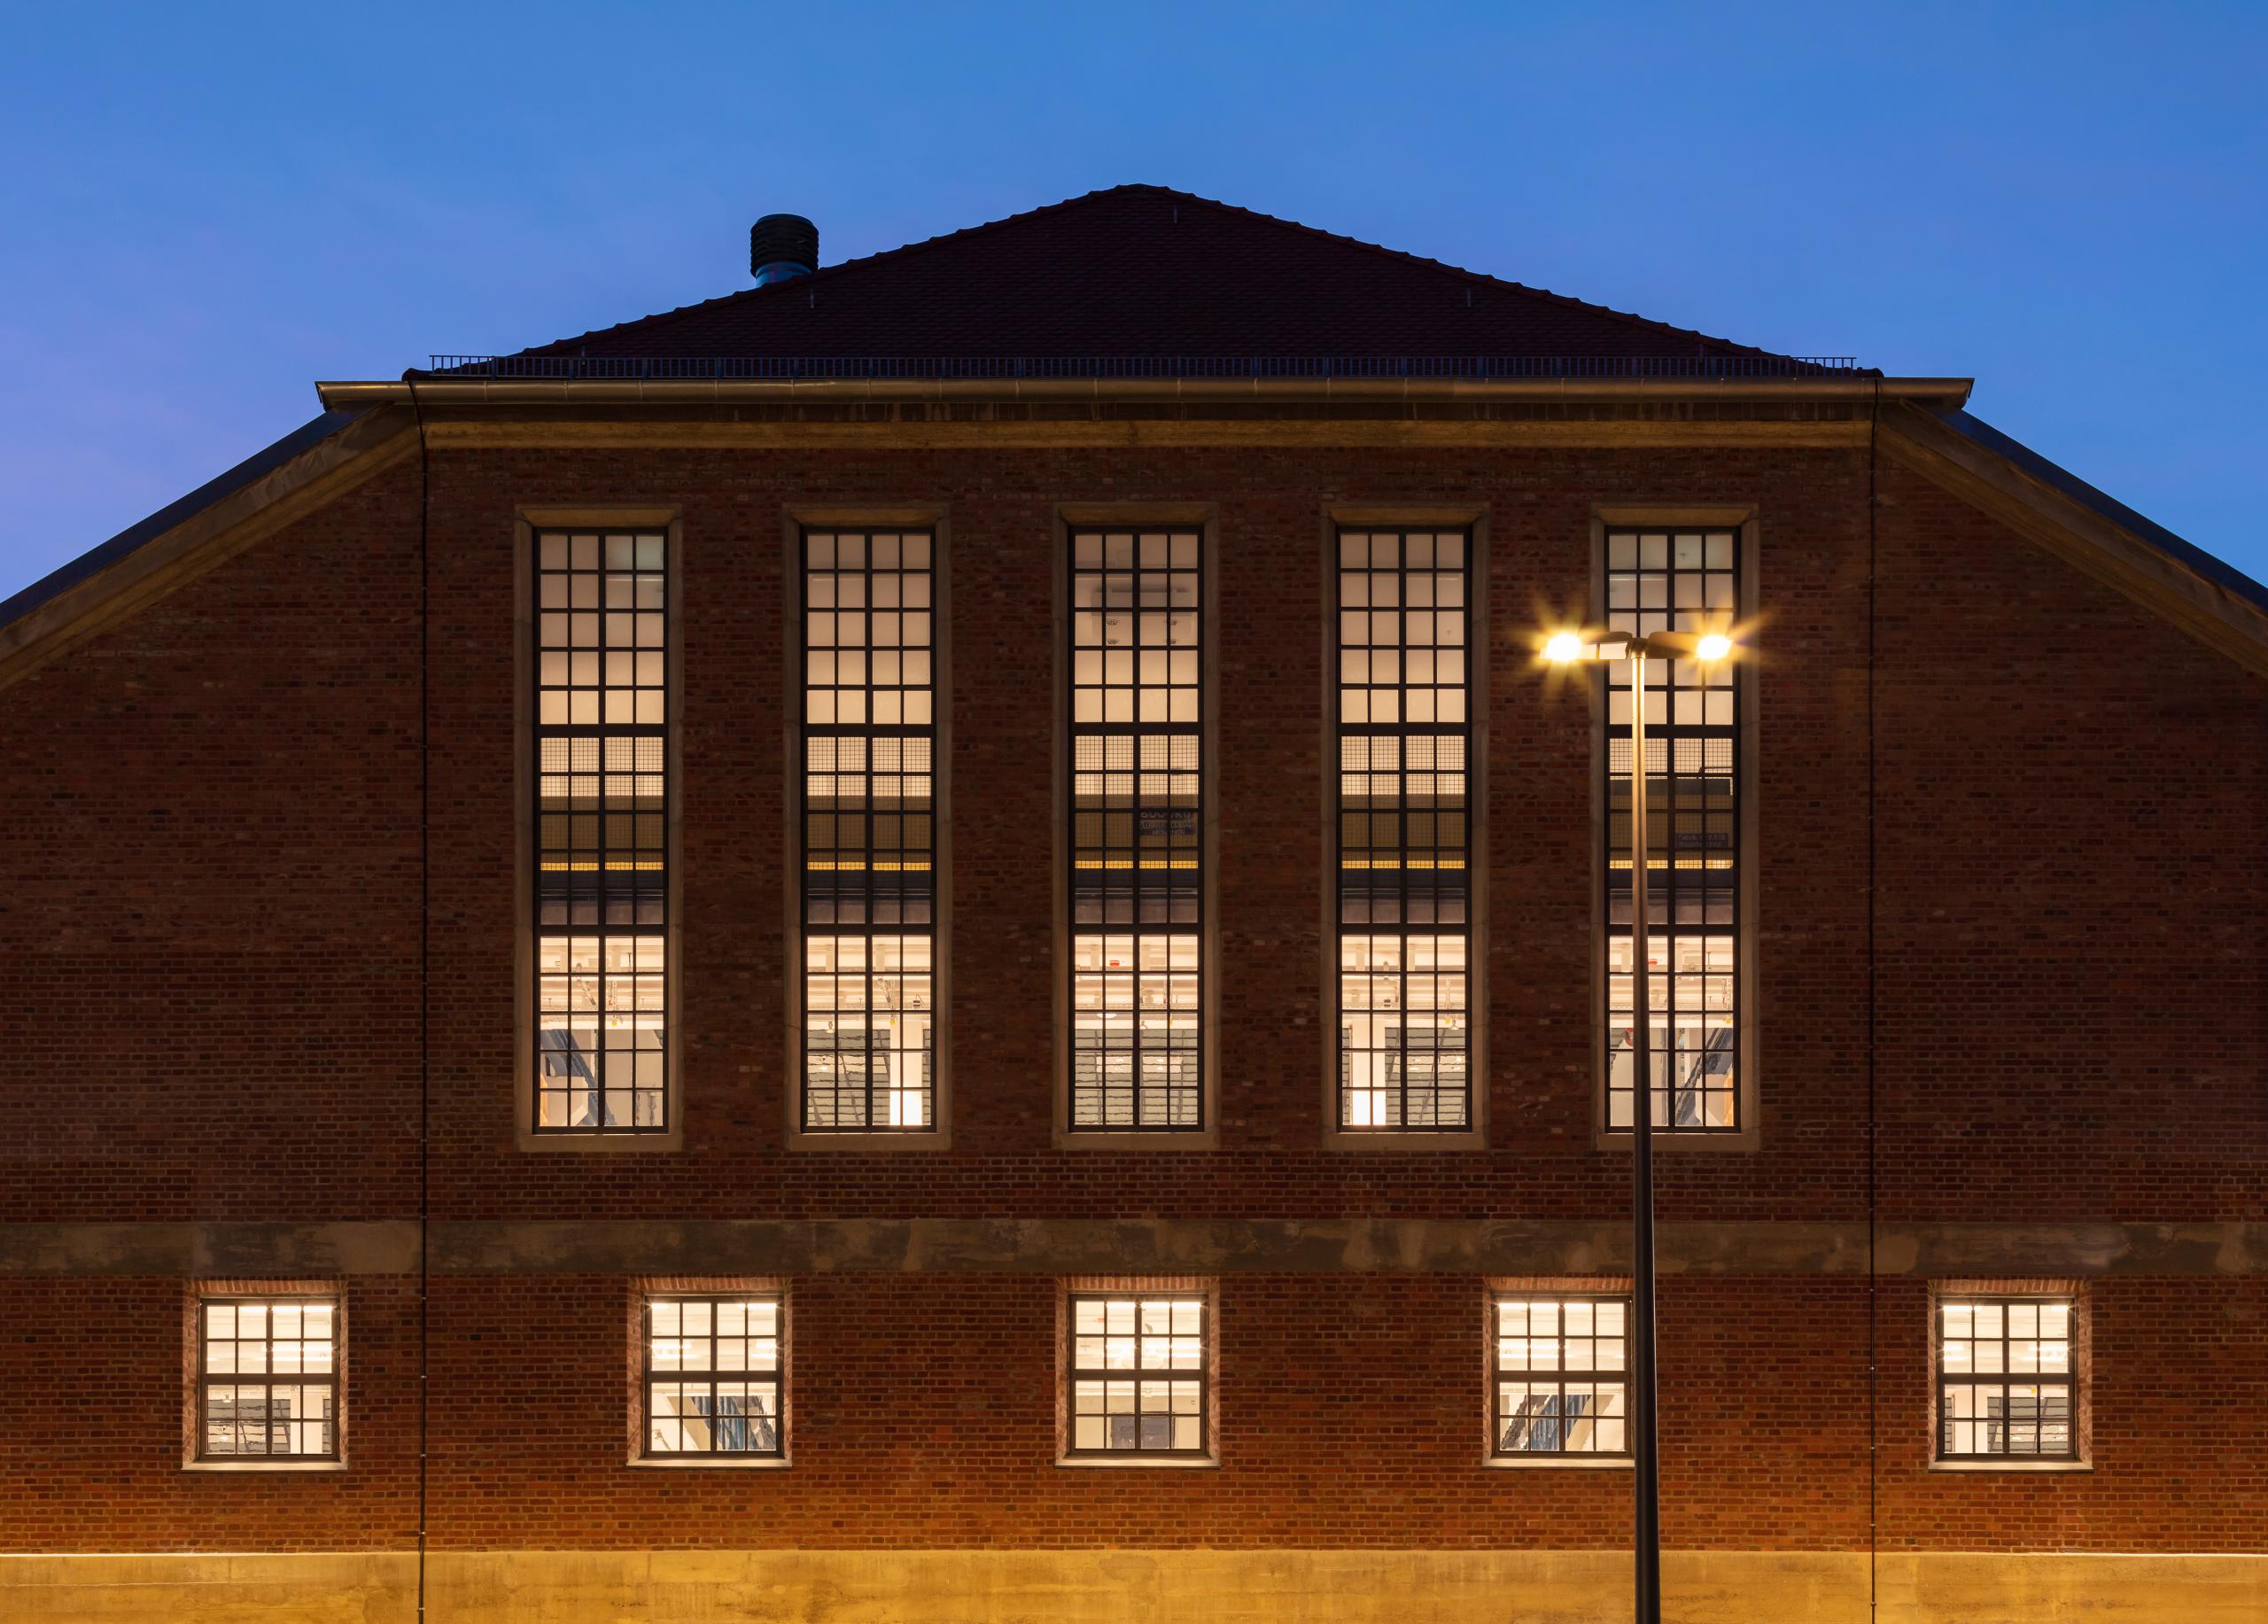 Stirnseite der Backstein-Halle E abends beleuchtet, mit 5 hohen Fenstern und darunter 5 kleinen quadratischen, Straßenlatererne